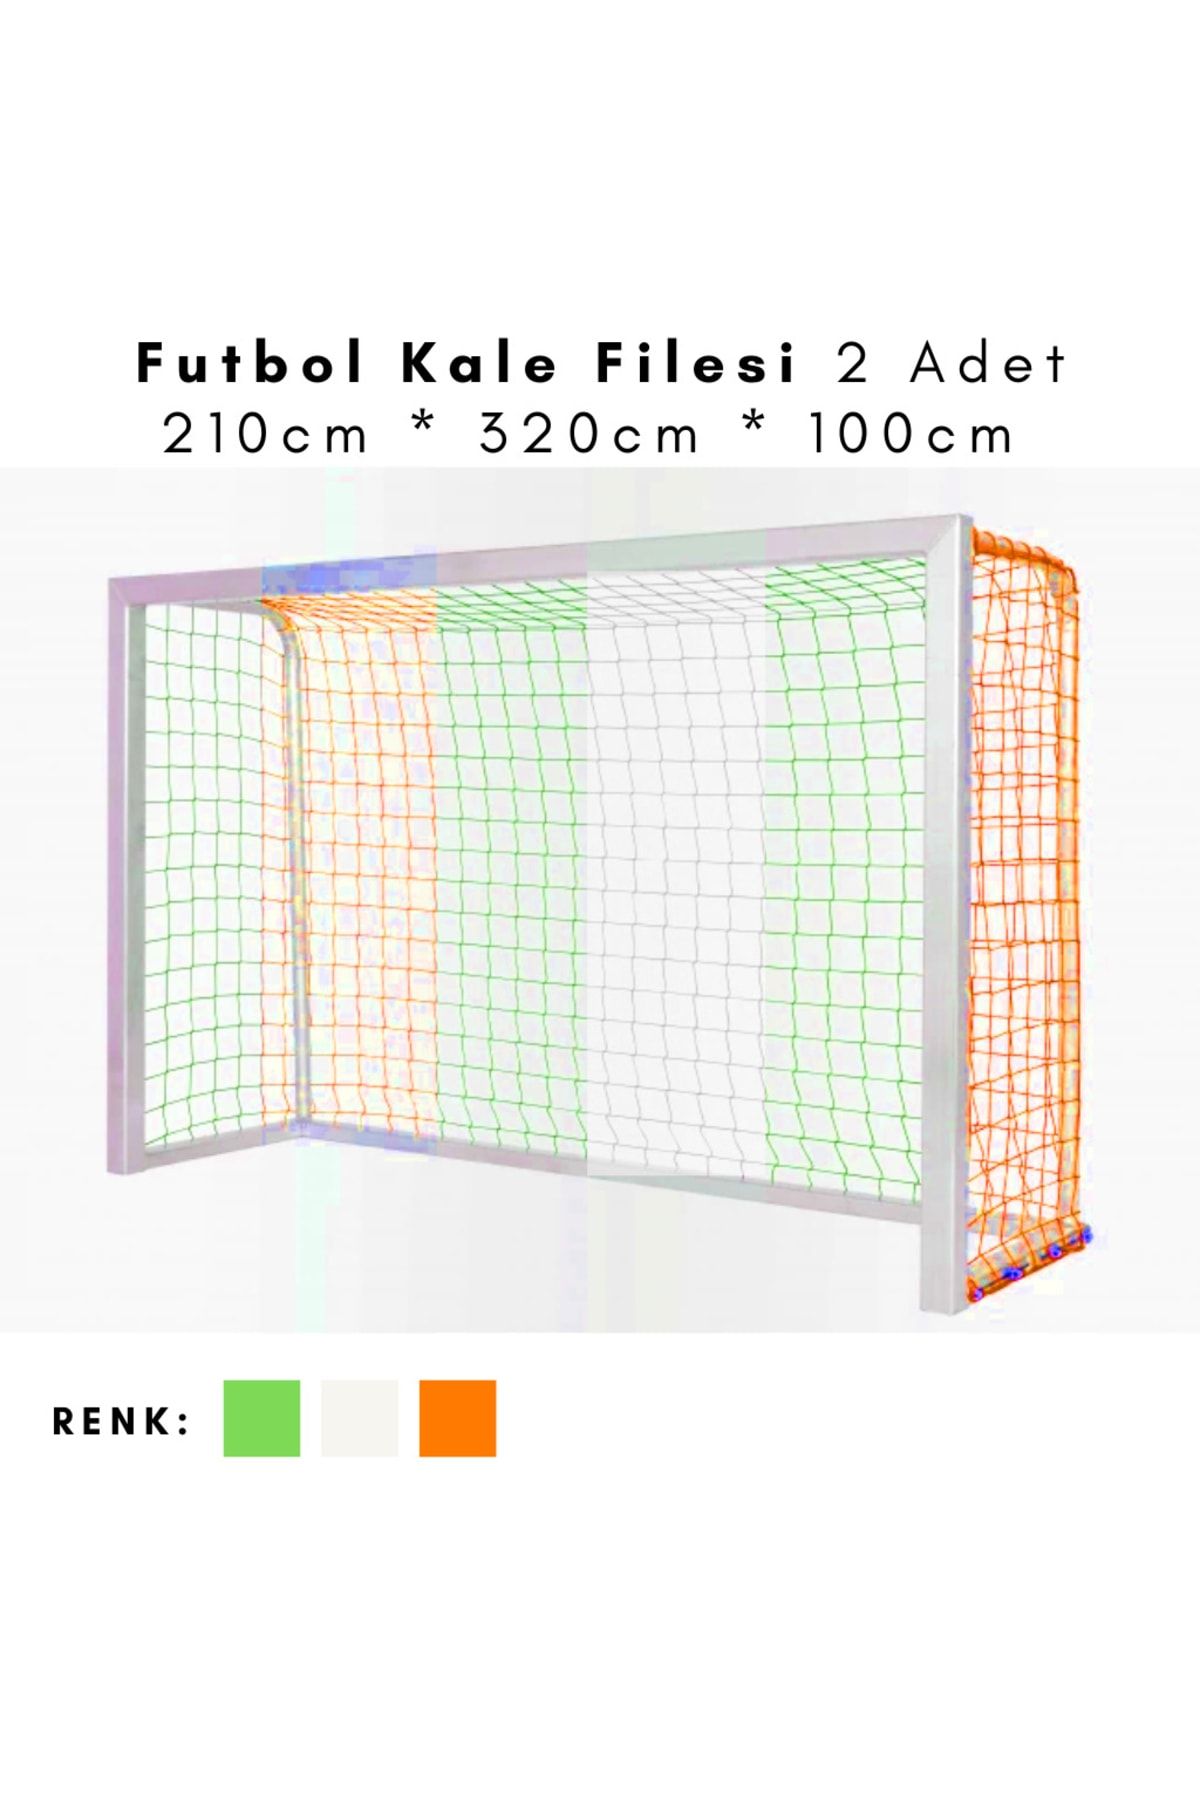 ÖZBEK Futbol Kale Filesi - Halı Saha Kale Ağı 210 x 320 x 100 cm 2 Adet File